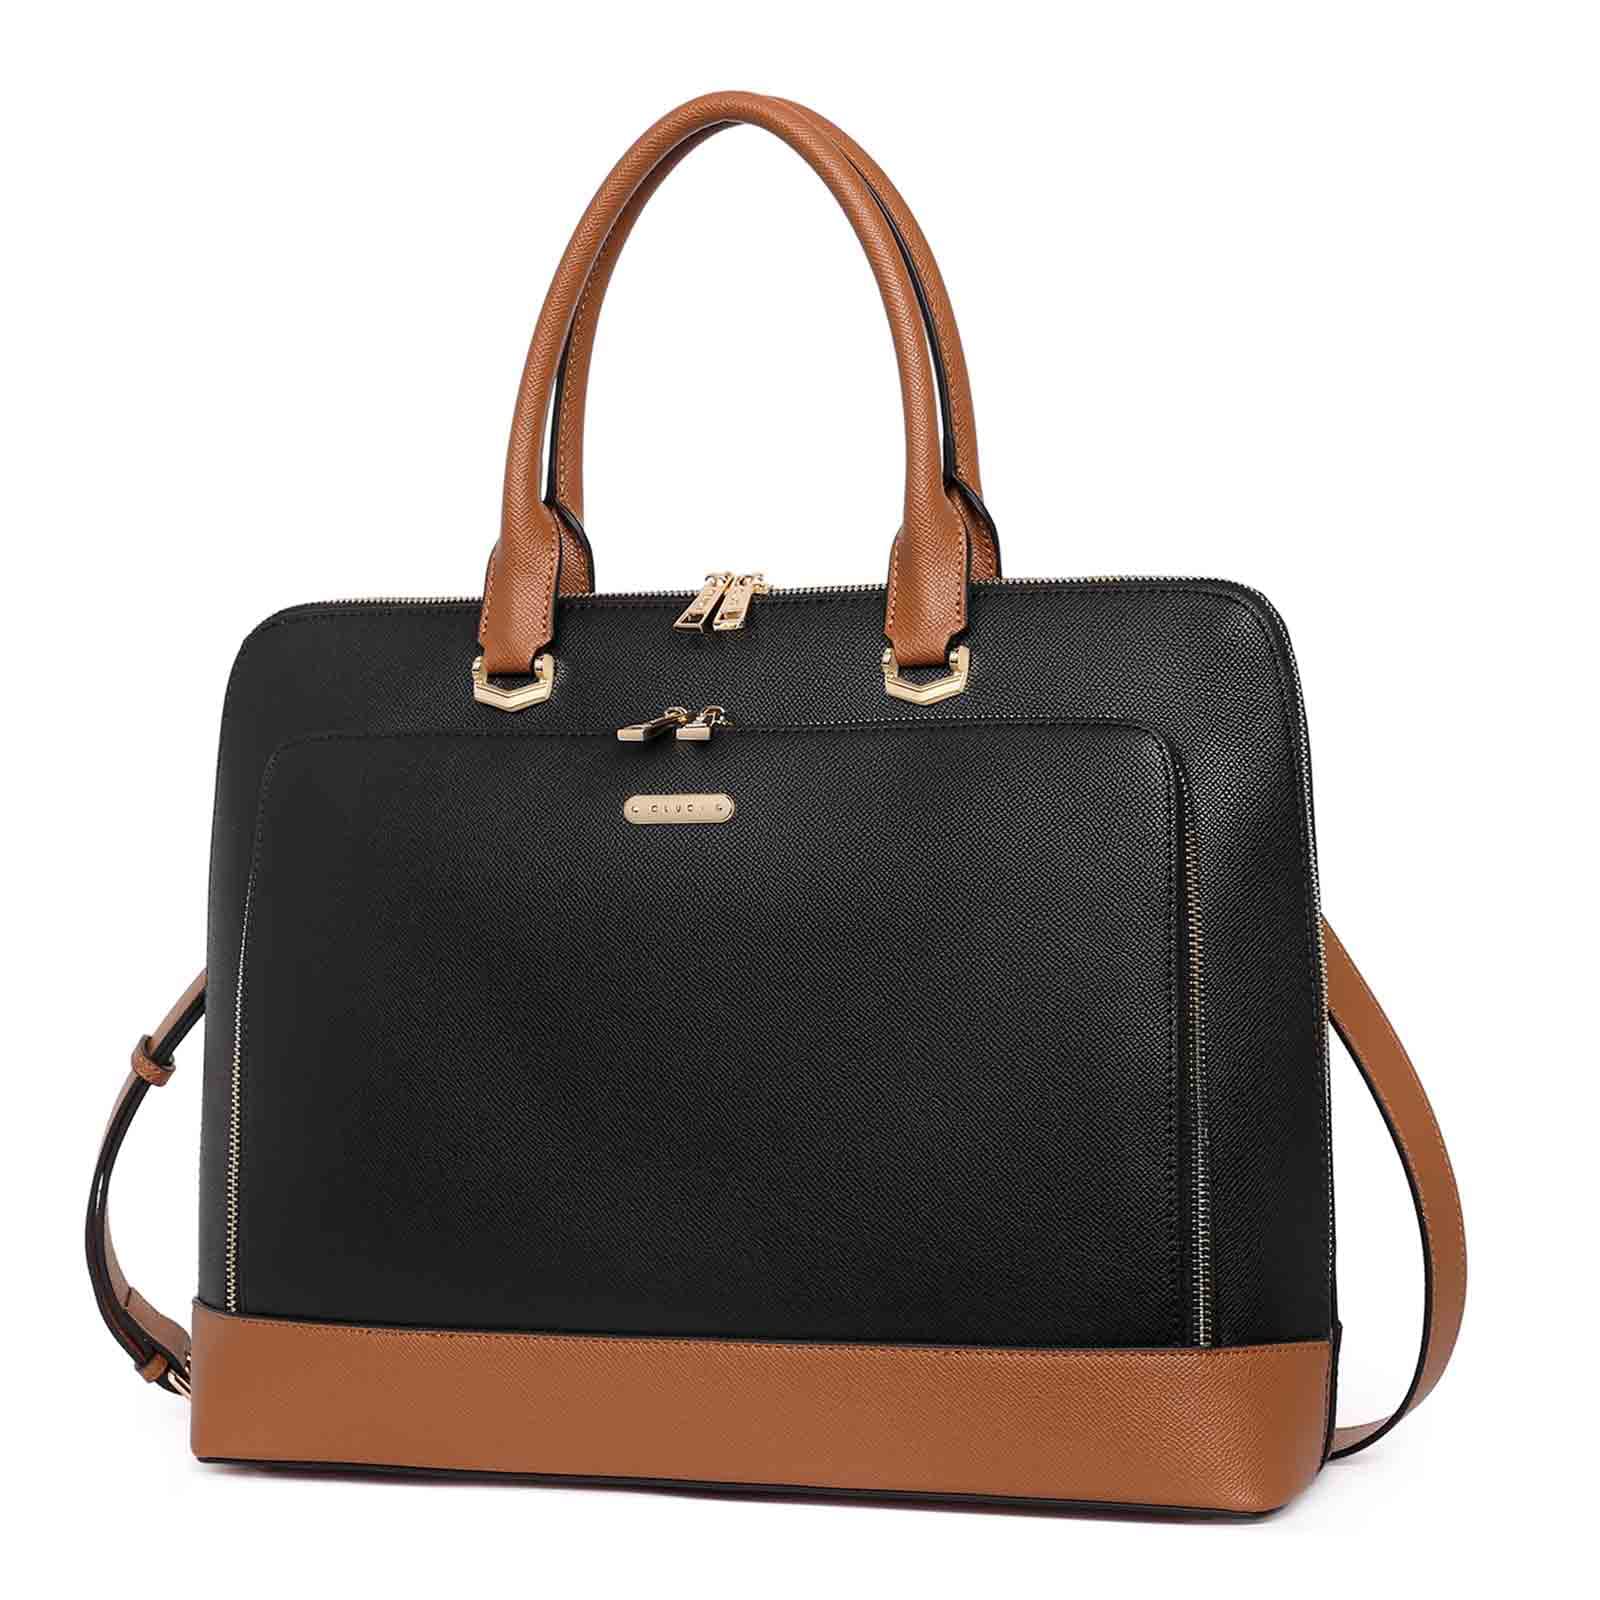 送料無料CLUCI Leather Briefcase for Women 15.6 Inch Laptop Business Work Slim Ladies Vintage Shoulder Bag Black-brown並